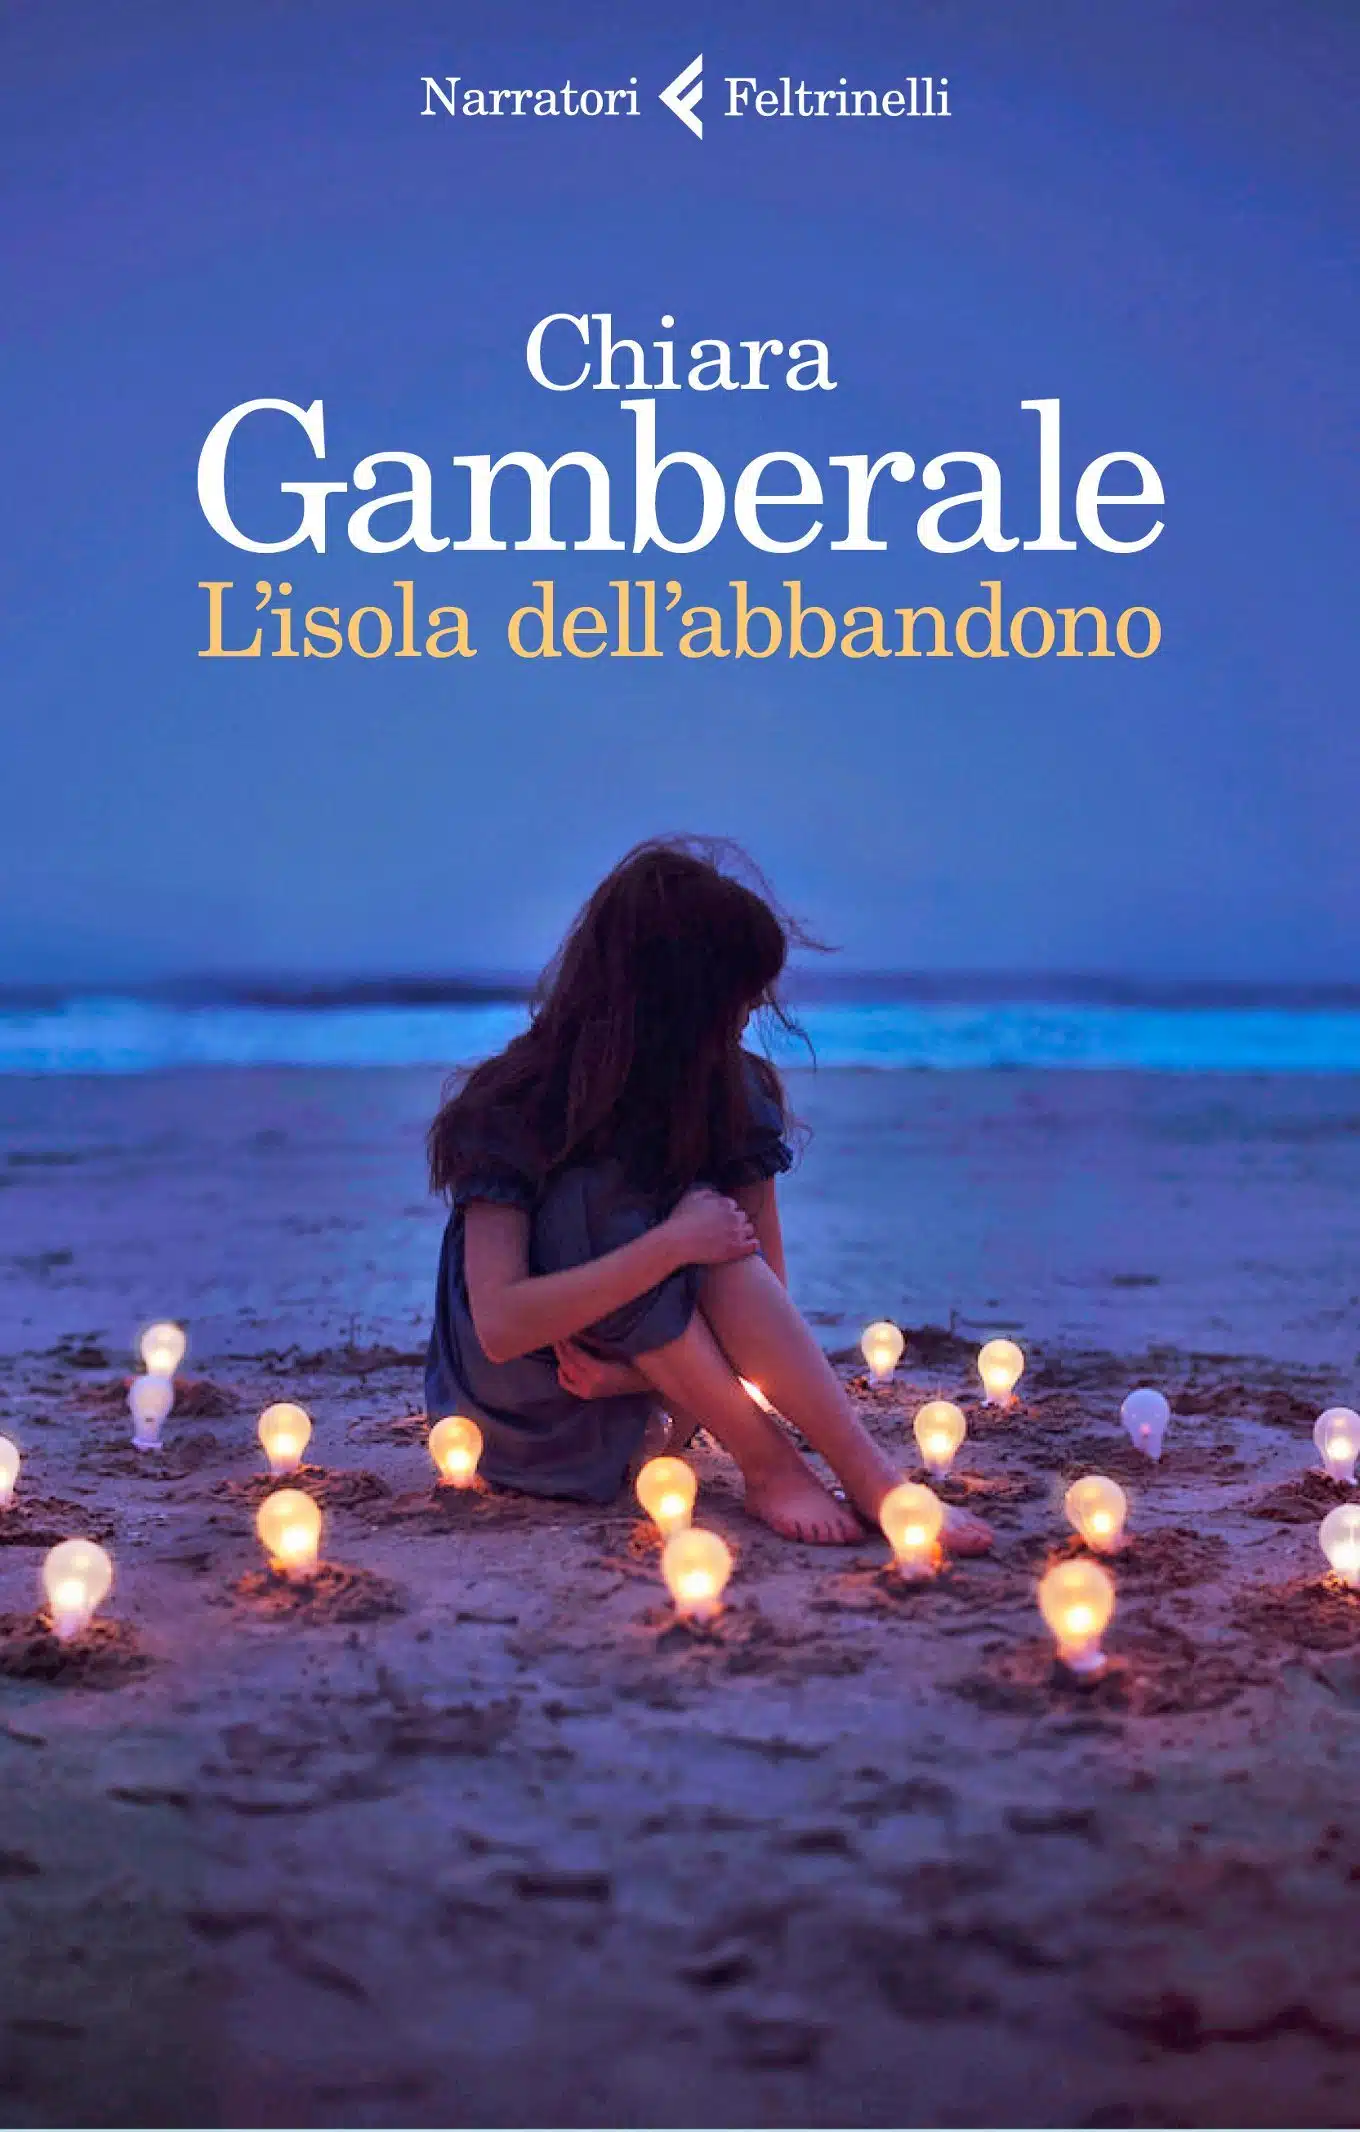 L'isola dell'abbandono (2019) di Chiara Gamberale - Recensione del libro